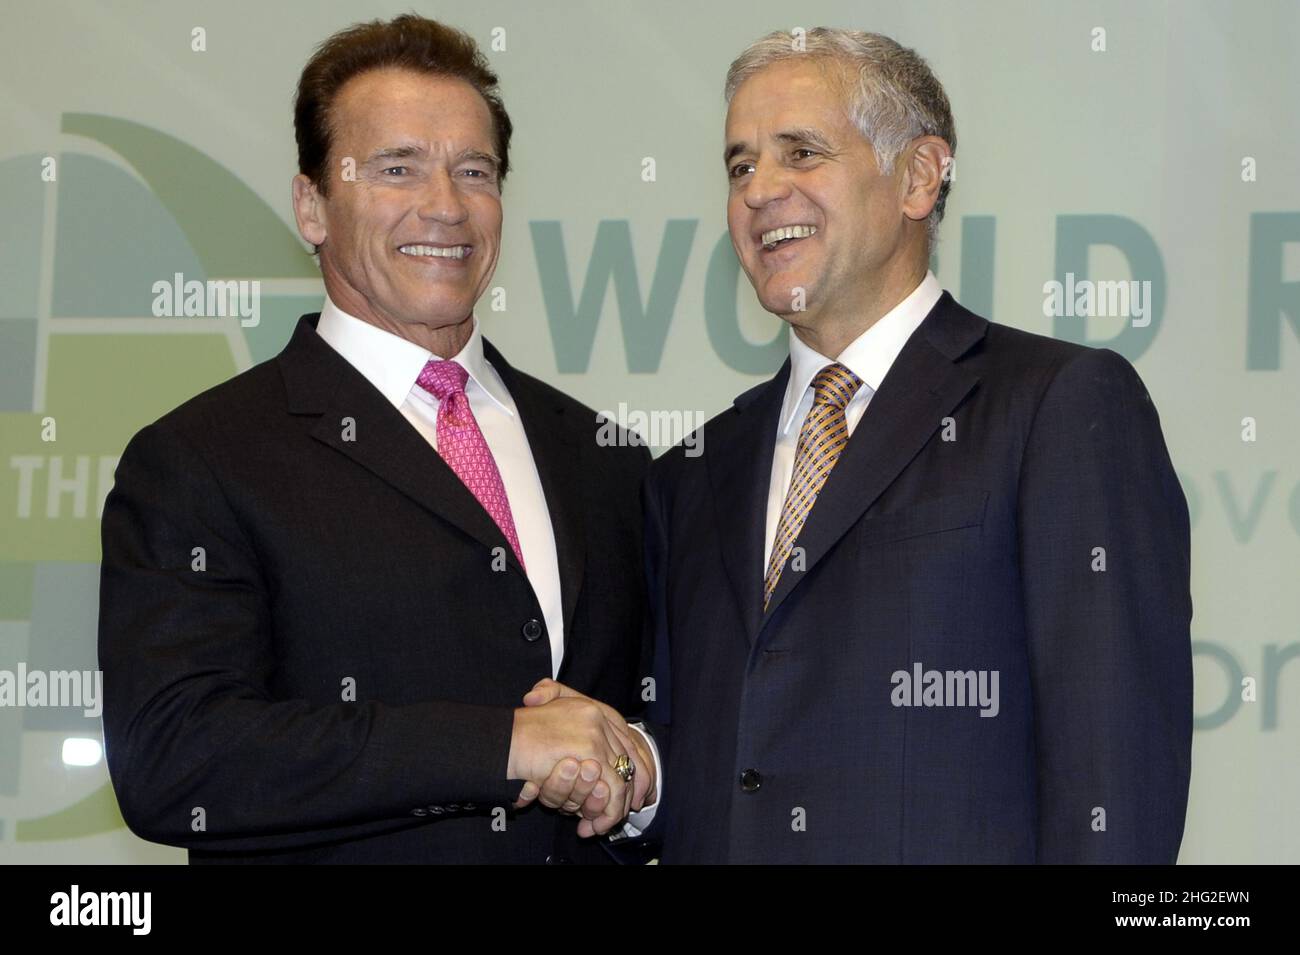 Le gouverneur de la Californie, Arnold Schwarzenegger, est accueilli par le président de la région Lombardie, Roberto Formigoni, avant une réunion des 15 régions les plus innovantes du monde à Milan, en Italie Banque D'Images